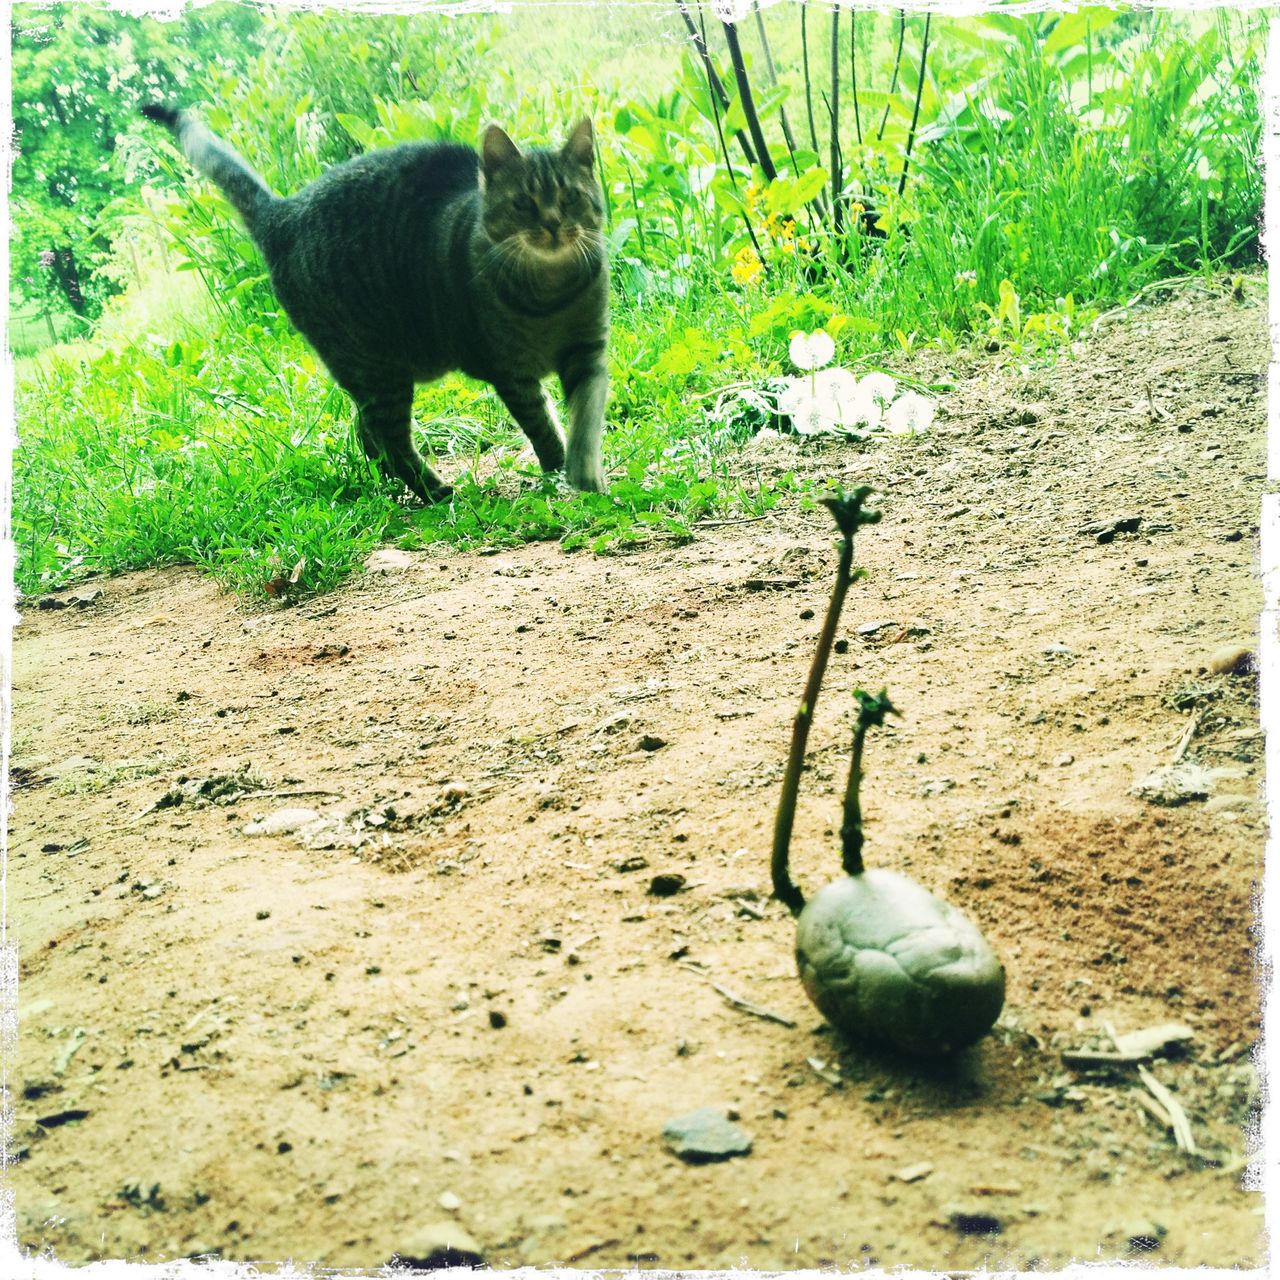 Schief fotografiertes, grünliches Bild einer Kartoffel mit langem Keim, der mit dem Schwanz der Katze im Hintergrund gut korrespondiert